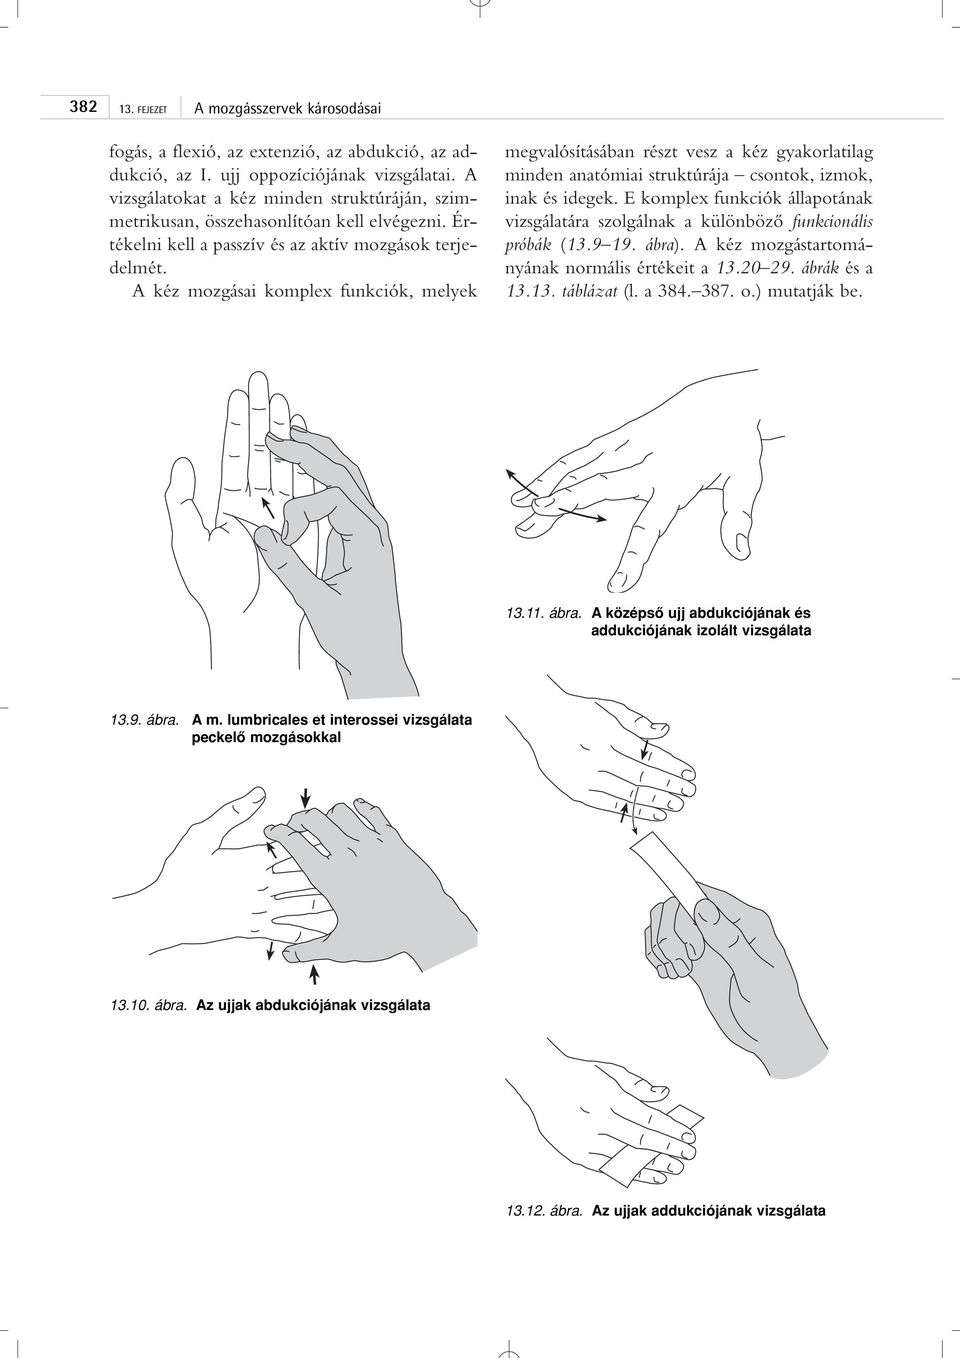 A kéz mozgásai komplex funkciók, melyek megvalósításában részt vesz a kéz gyakorlatilag minden anatómiai struktúrája csontok, izmok, inak és idegek.